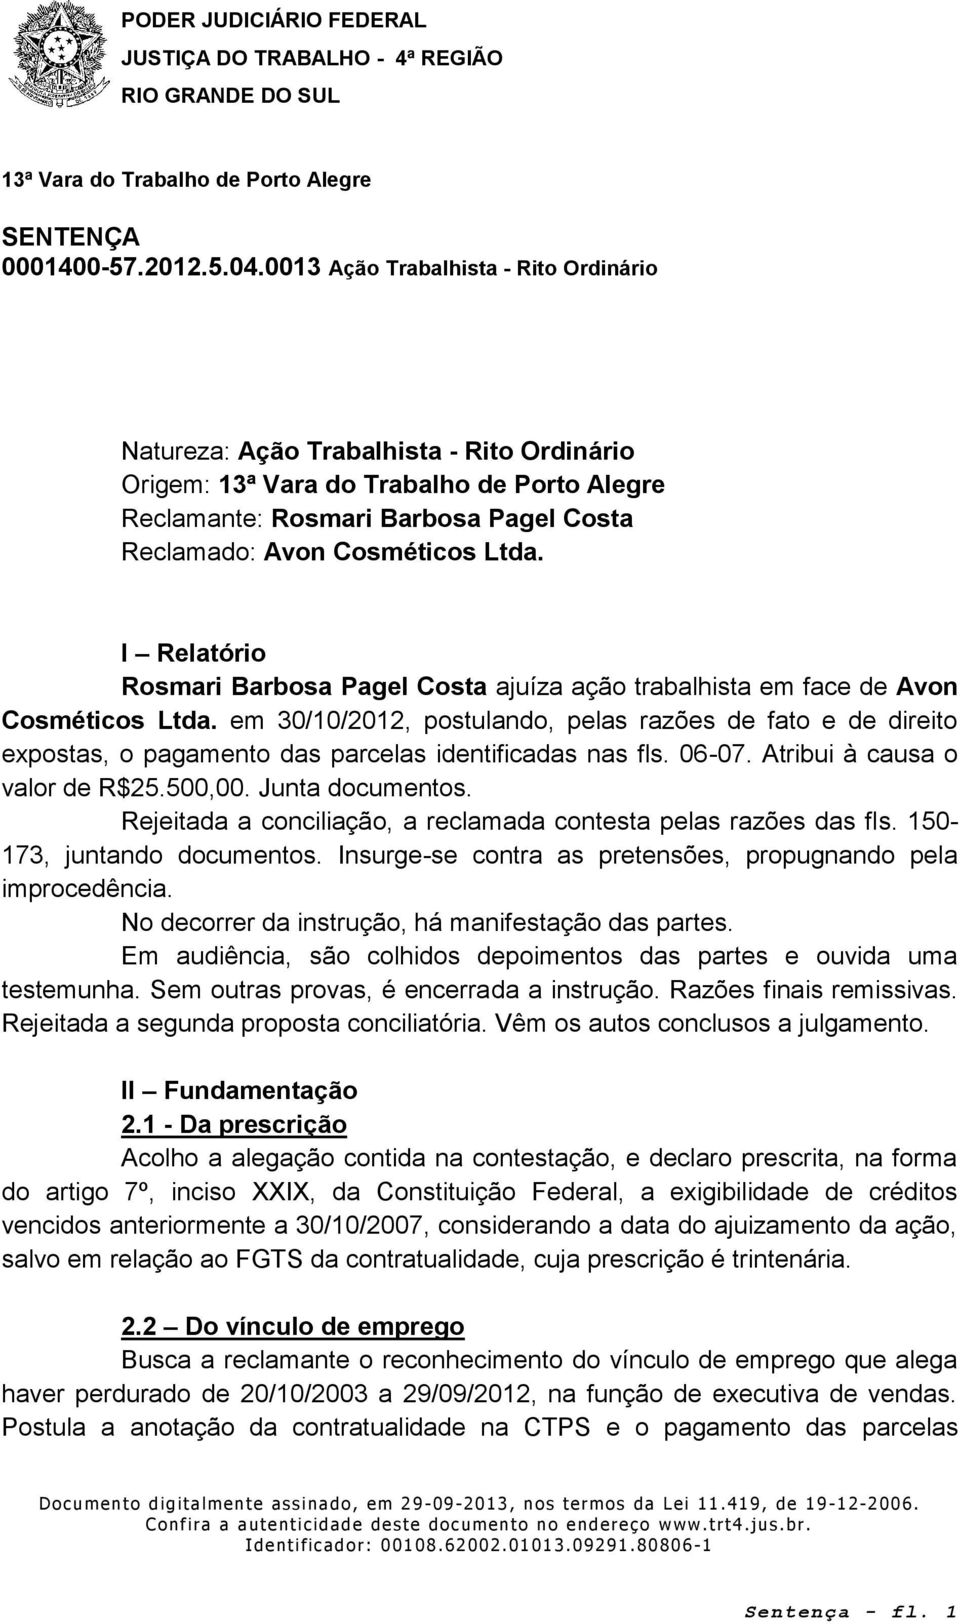 em 30/10/2012, postulando, pelas razões de fato e de direito expostas, o pagamento das parcelas identificadas nas fls. 06-07. Atribui à causa o valor de R$25.500,00. Junta documentos.